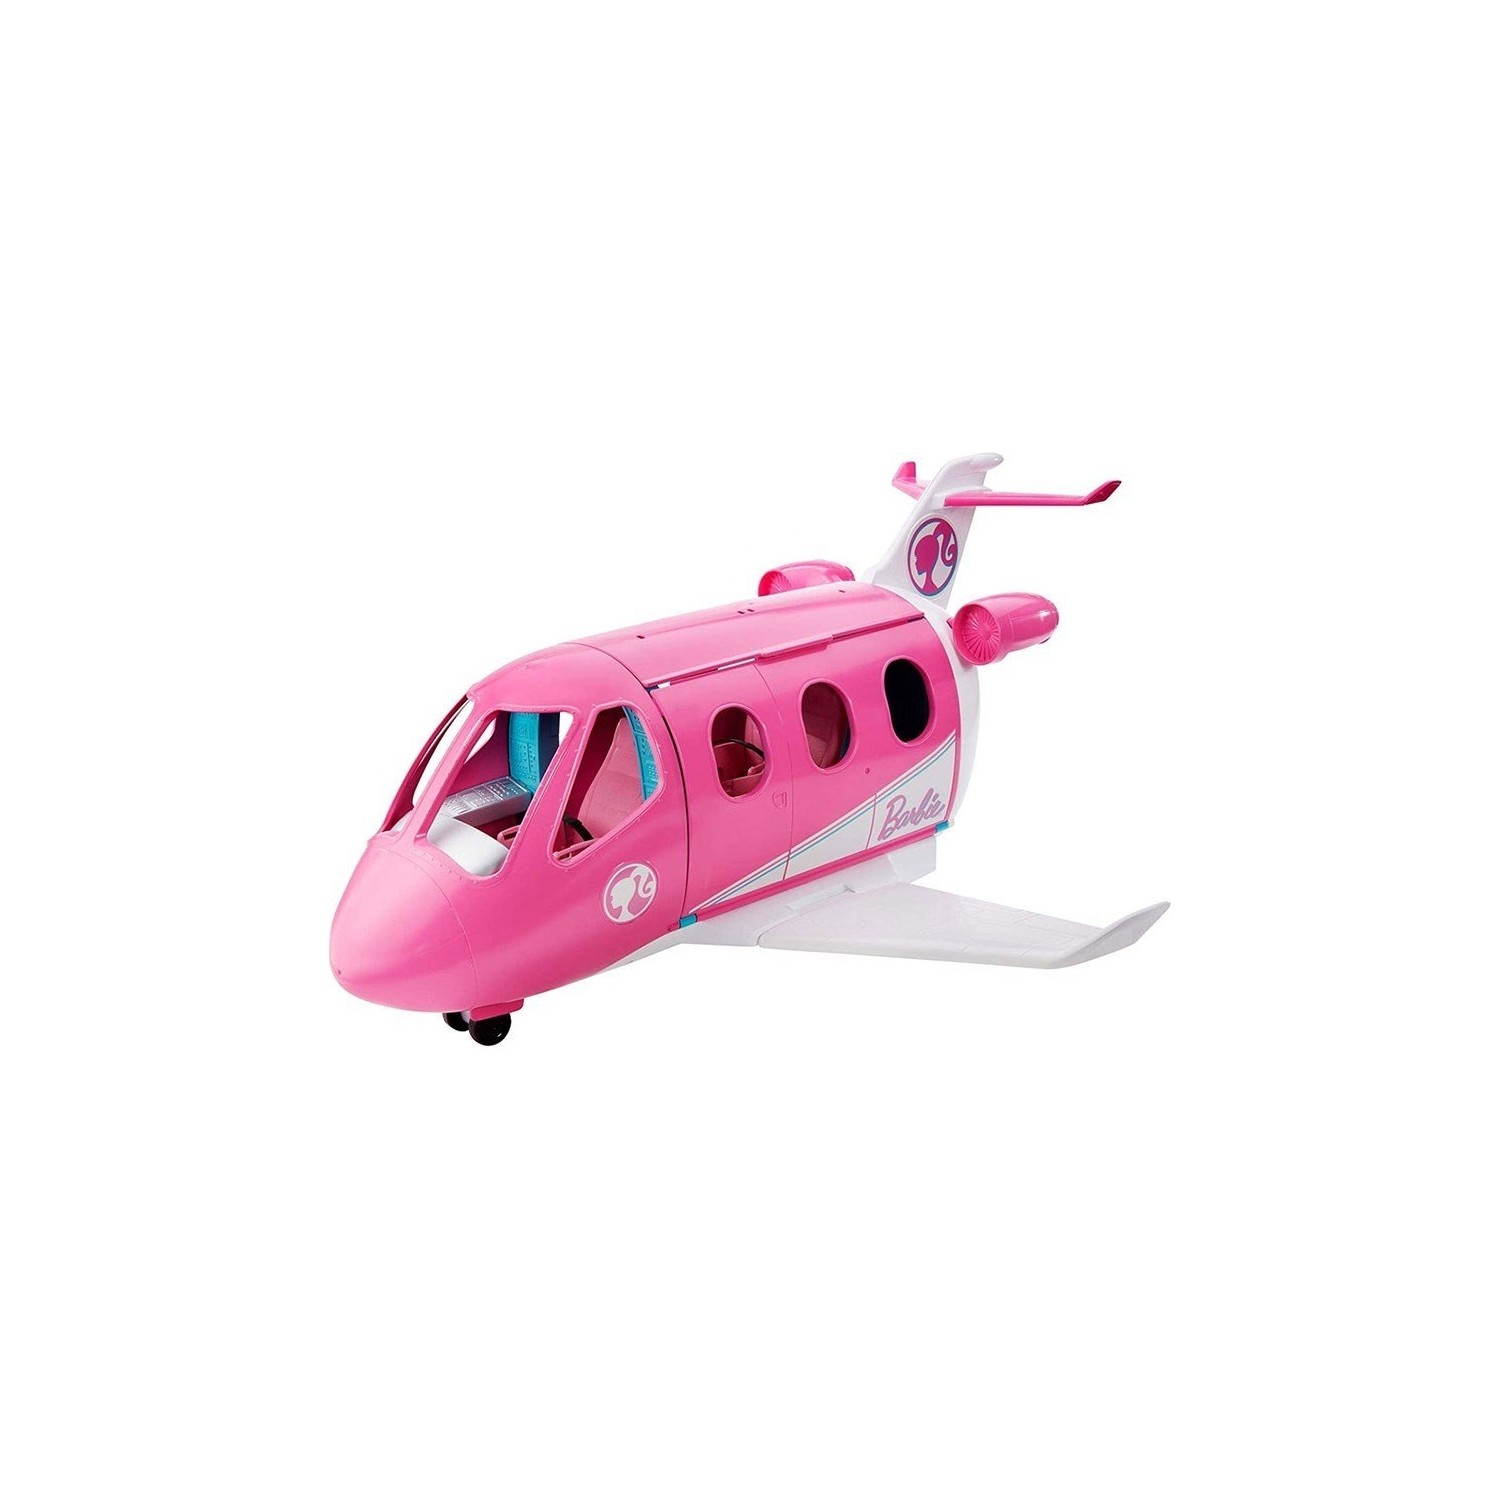 Игровой набор Barbie самолет